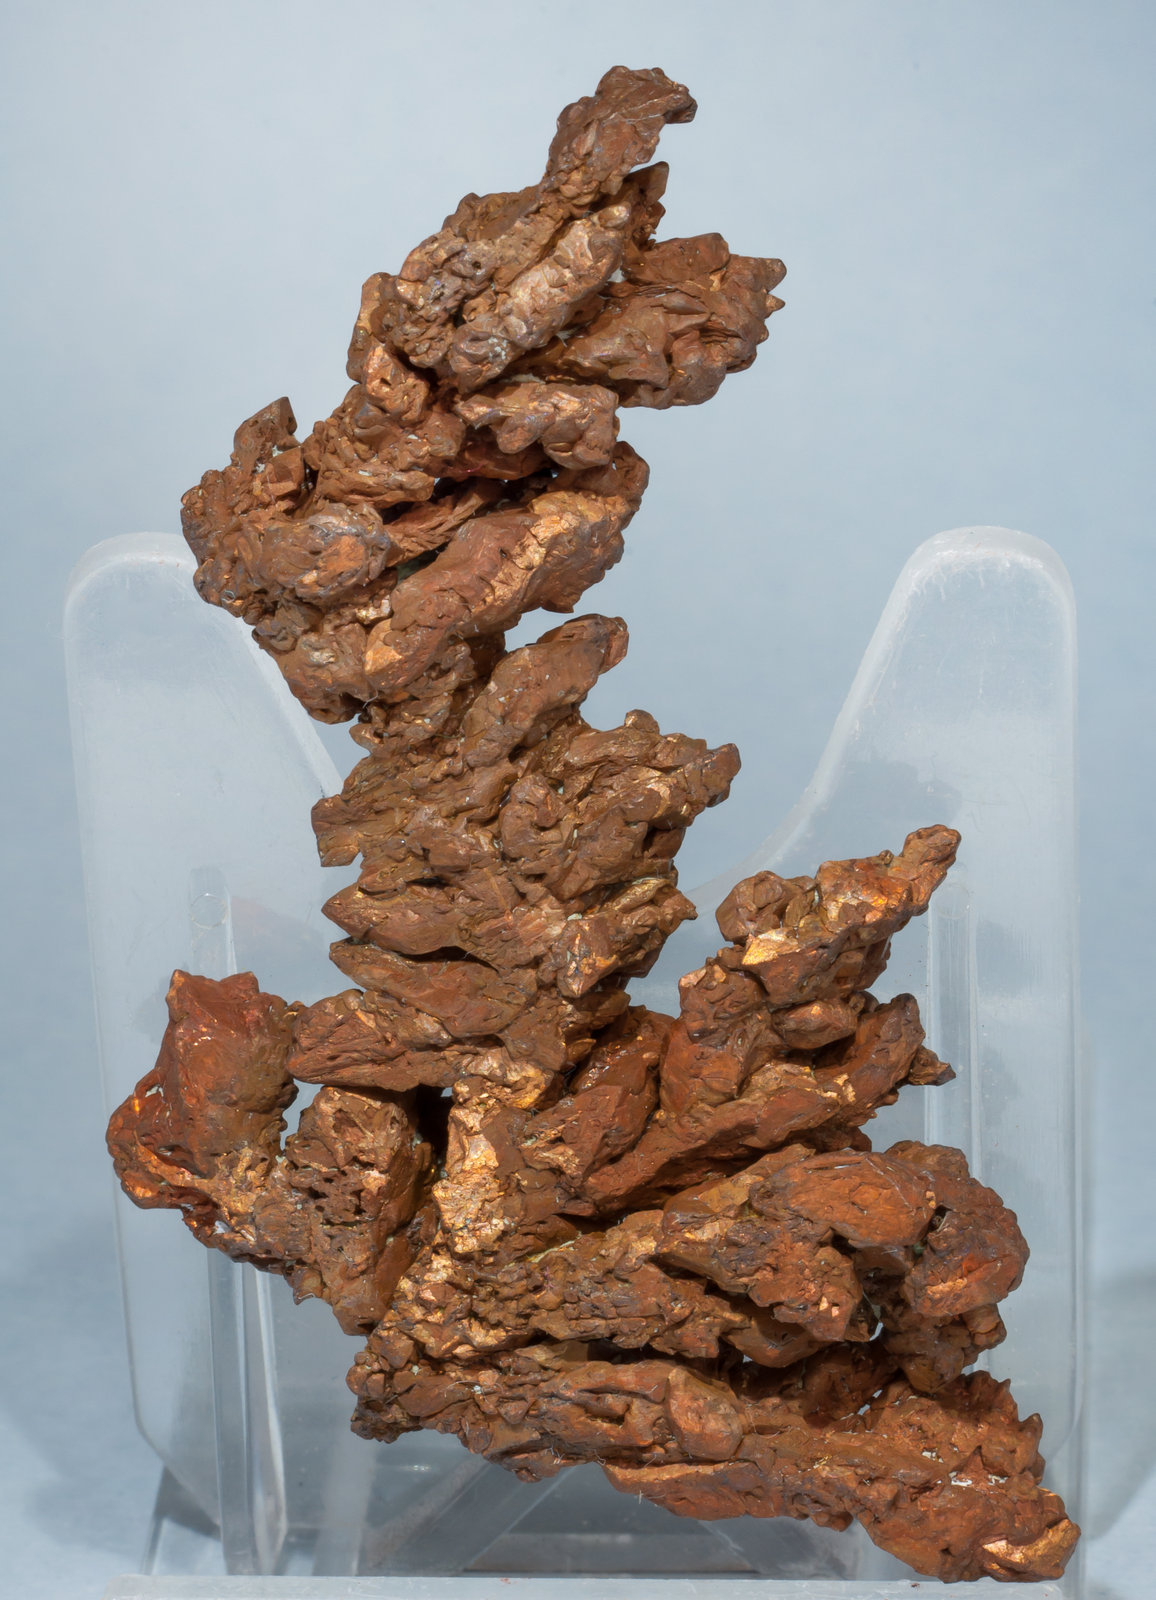 specimens/s_imagesAE8/Copper-TH96AE8f.jpg